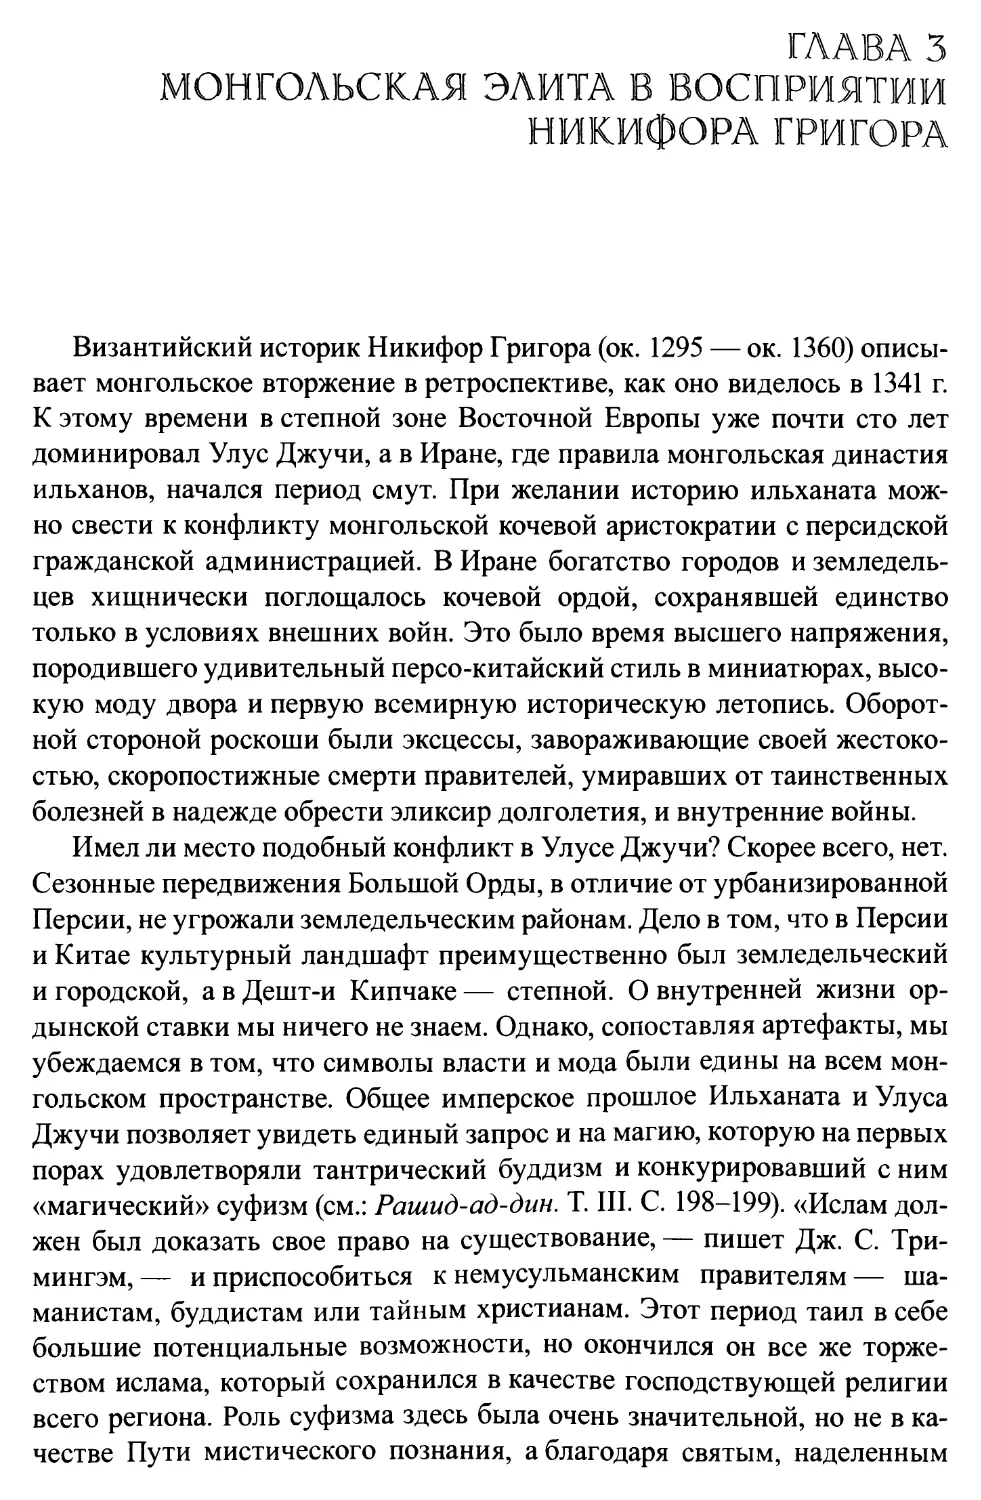 Глава 3. Монгольская элита в восприятии Никифора Григора